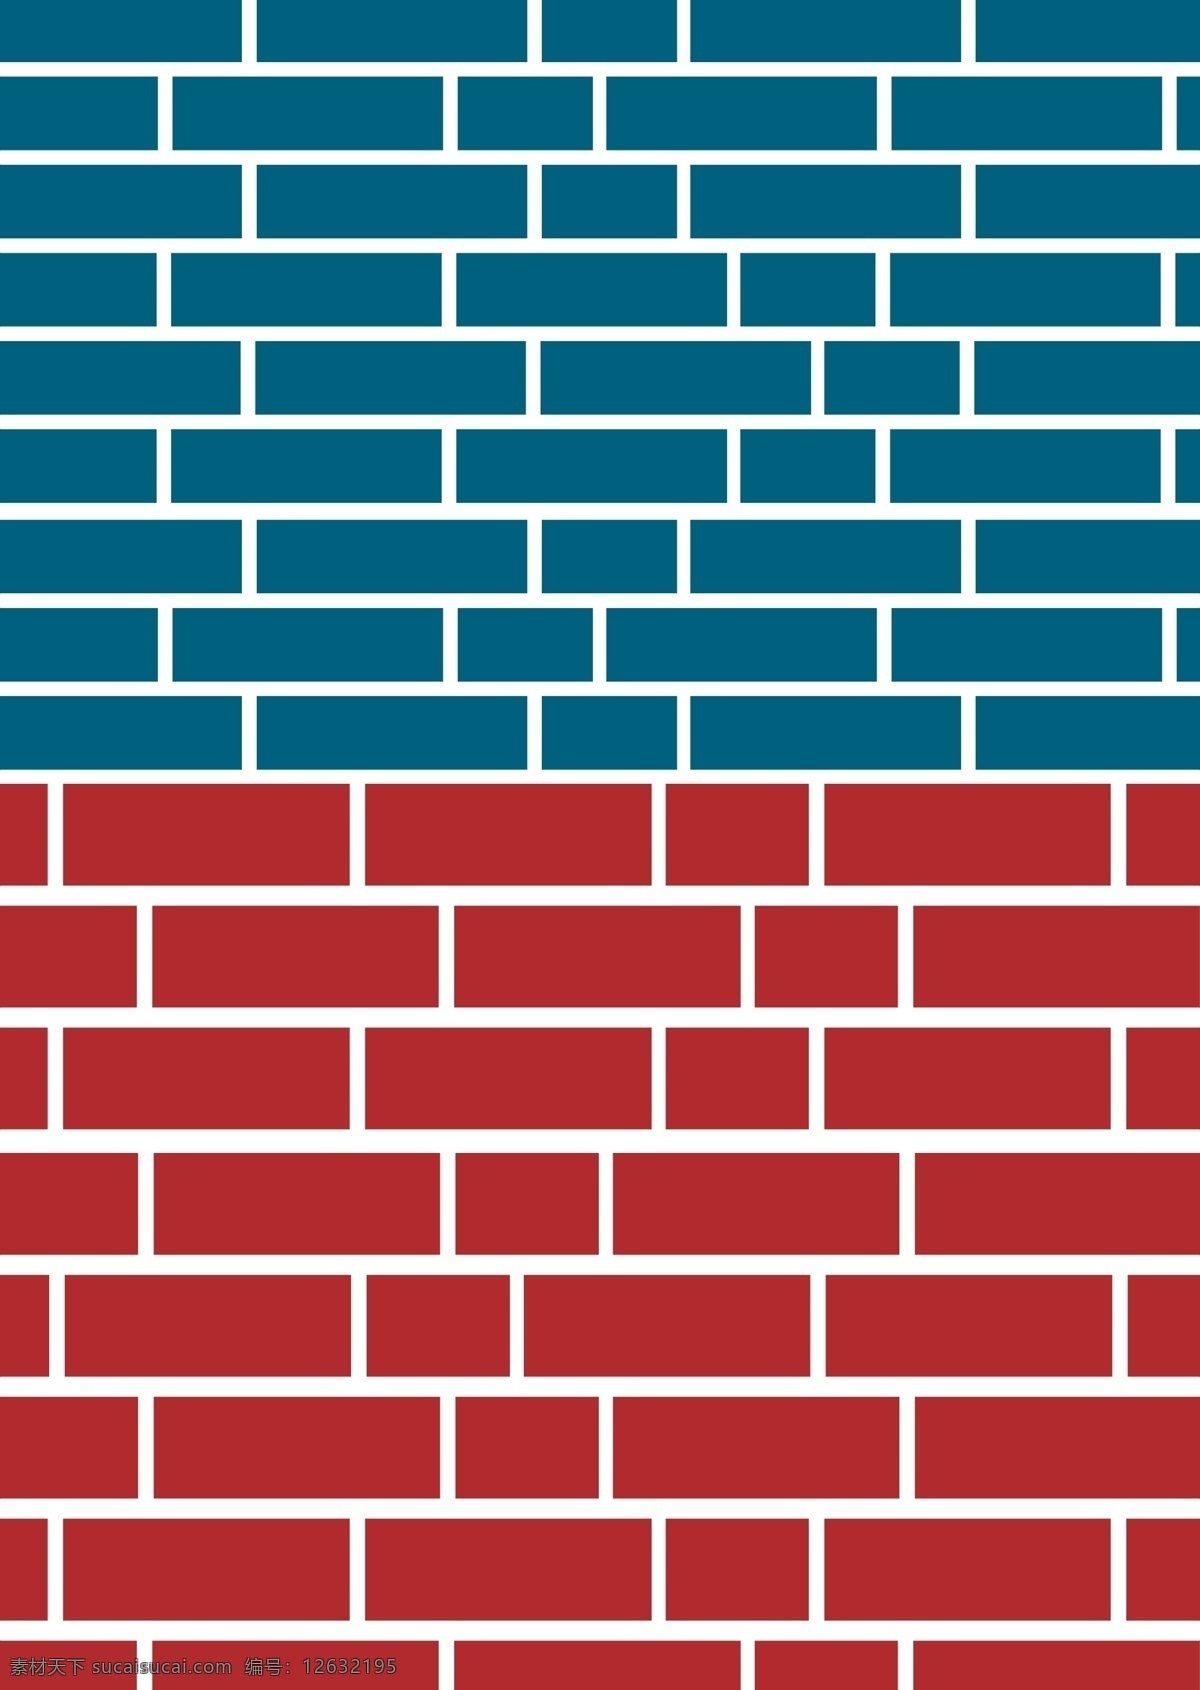 砖墙 城墙 青砖 红砖 矢量 砖 古典 墙面 底纹 背景 青色 红色 建筑 中式 风格ai 矢量素材 纹理 底纹背景 底纹边框